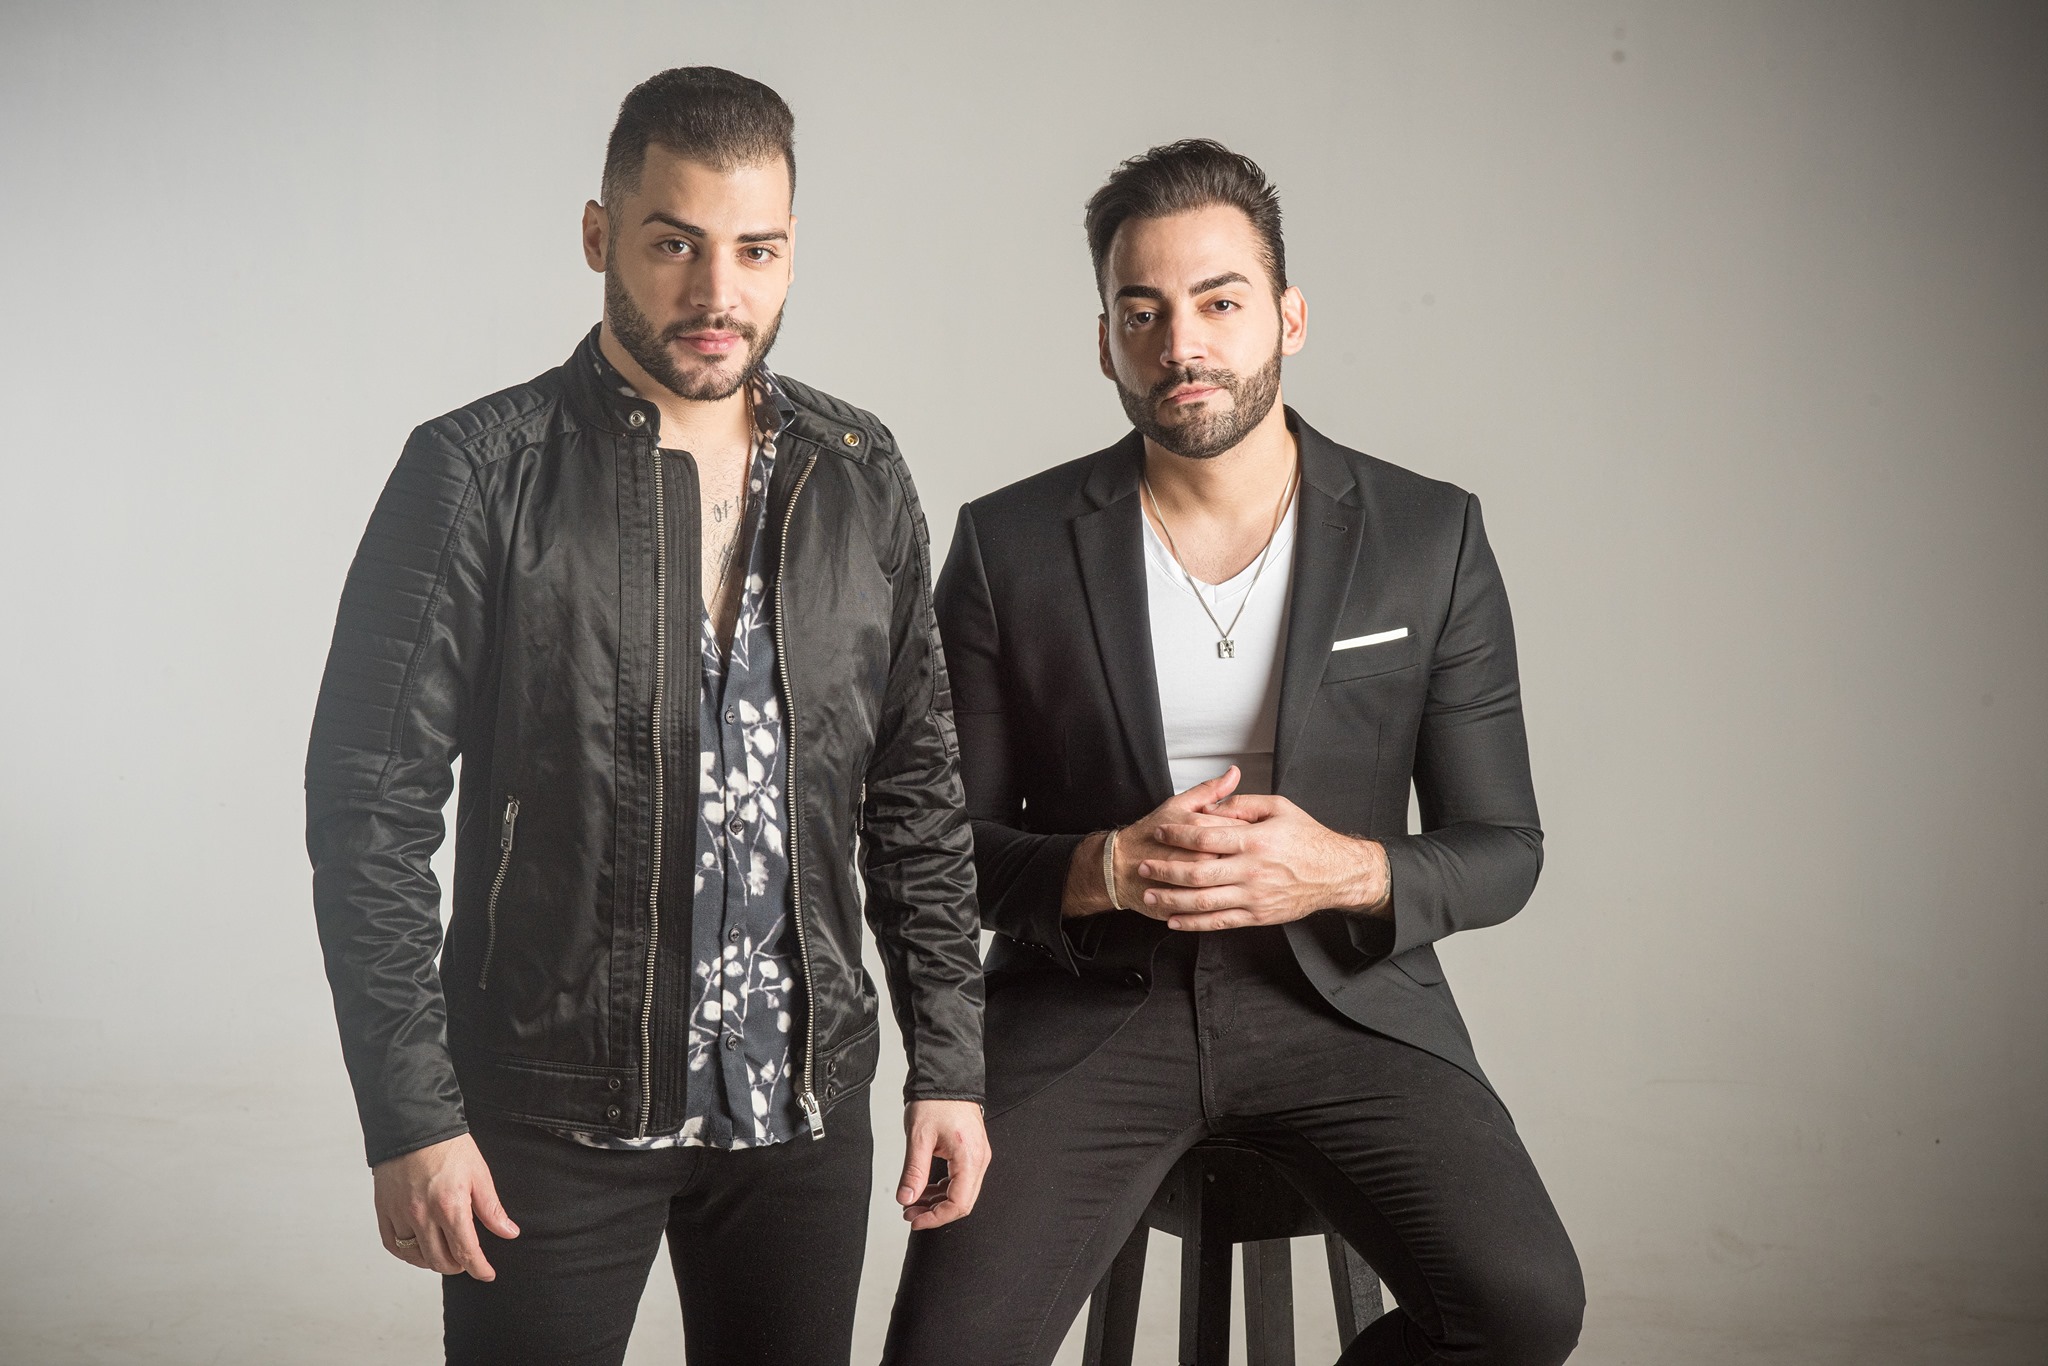 Guilherme e Benuto atingem 100 milhões de visualizações com a música "3 batidas" e colocam a dupla ao lado de grandes nomes da música sertaneja 42